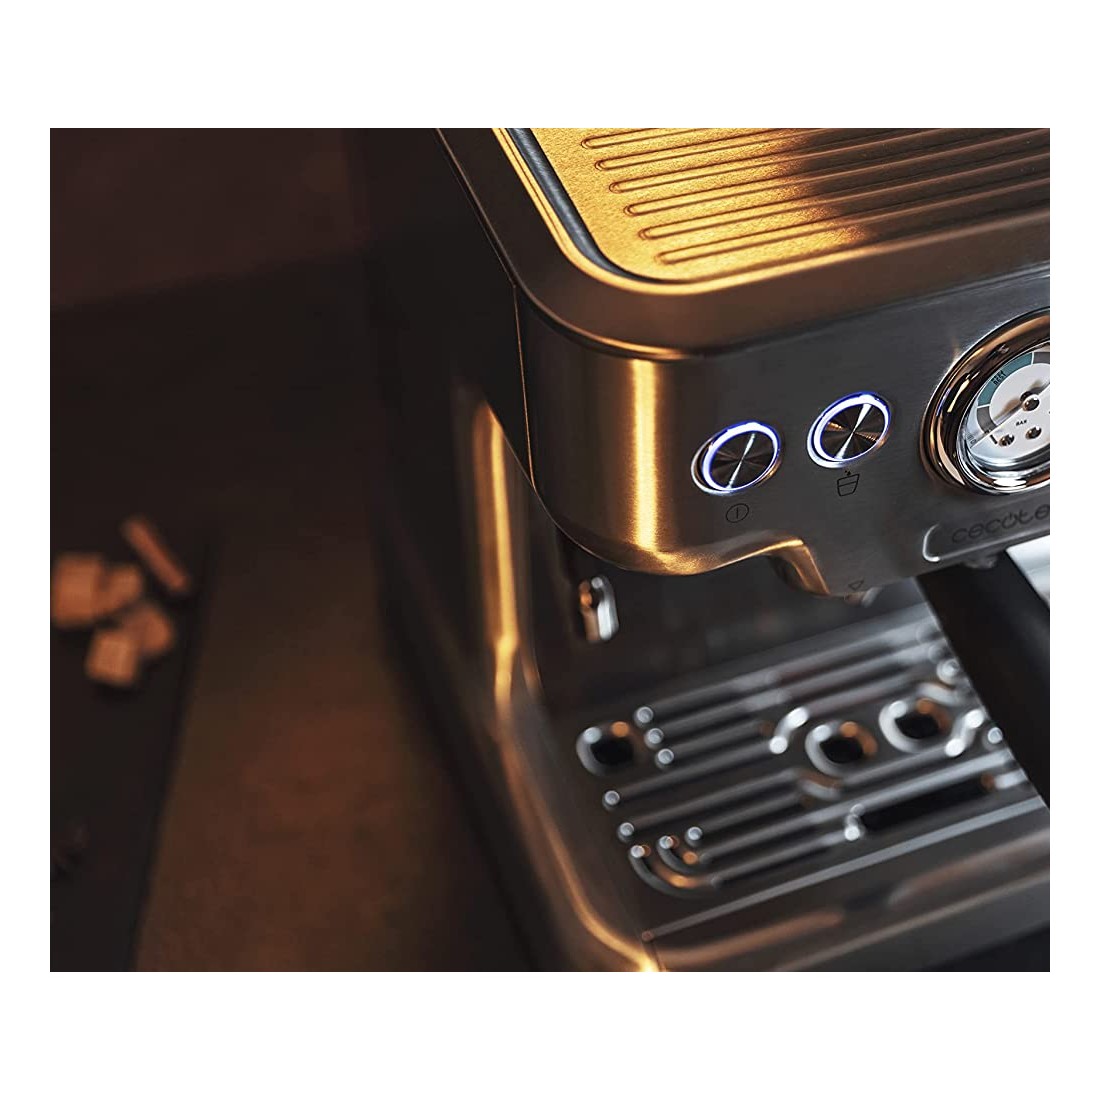 Cafetera Express - Cecotec Power Espresso 20 Barista Pro, 20 bares, 2900  Vatios, Inox